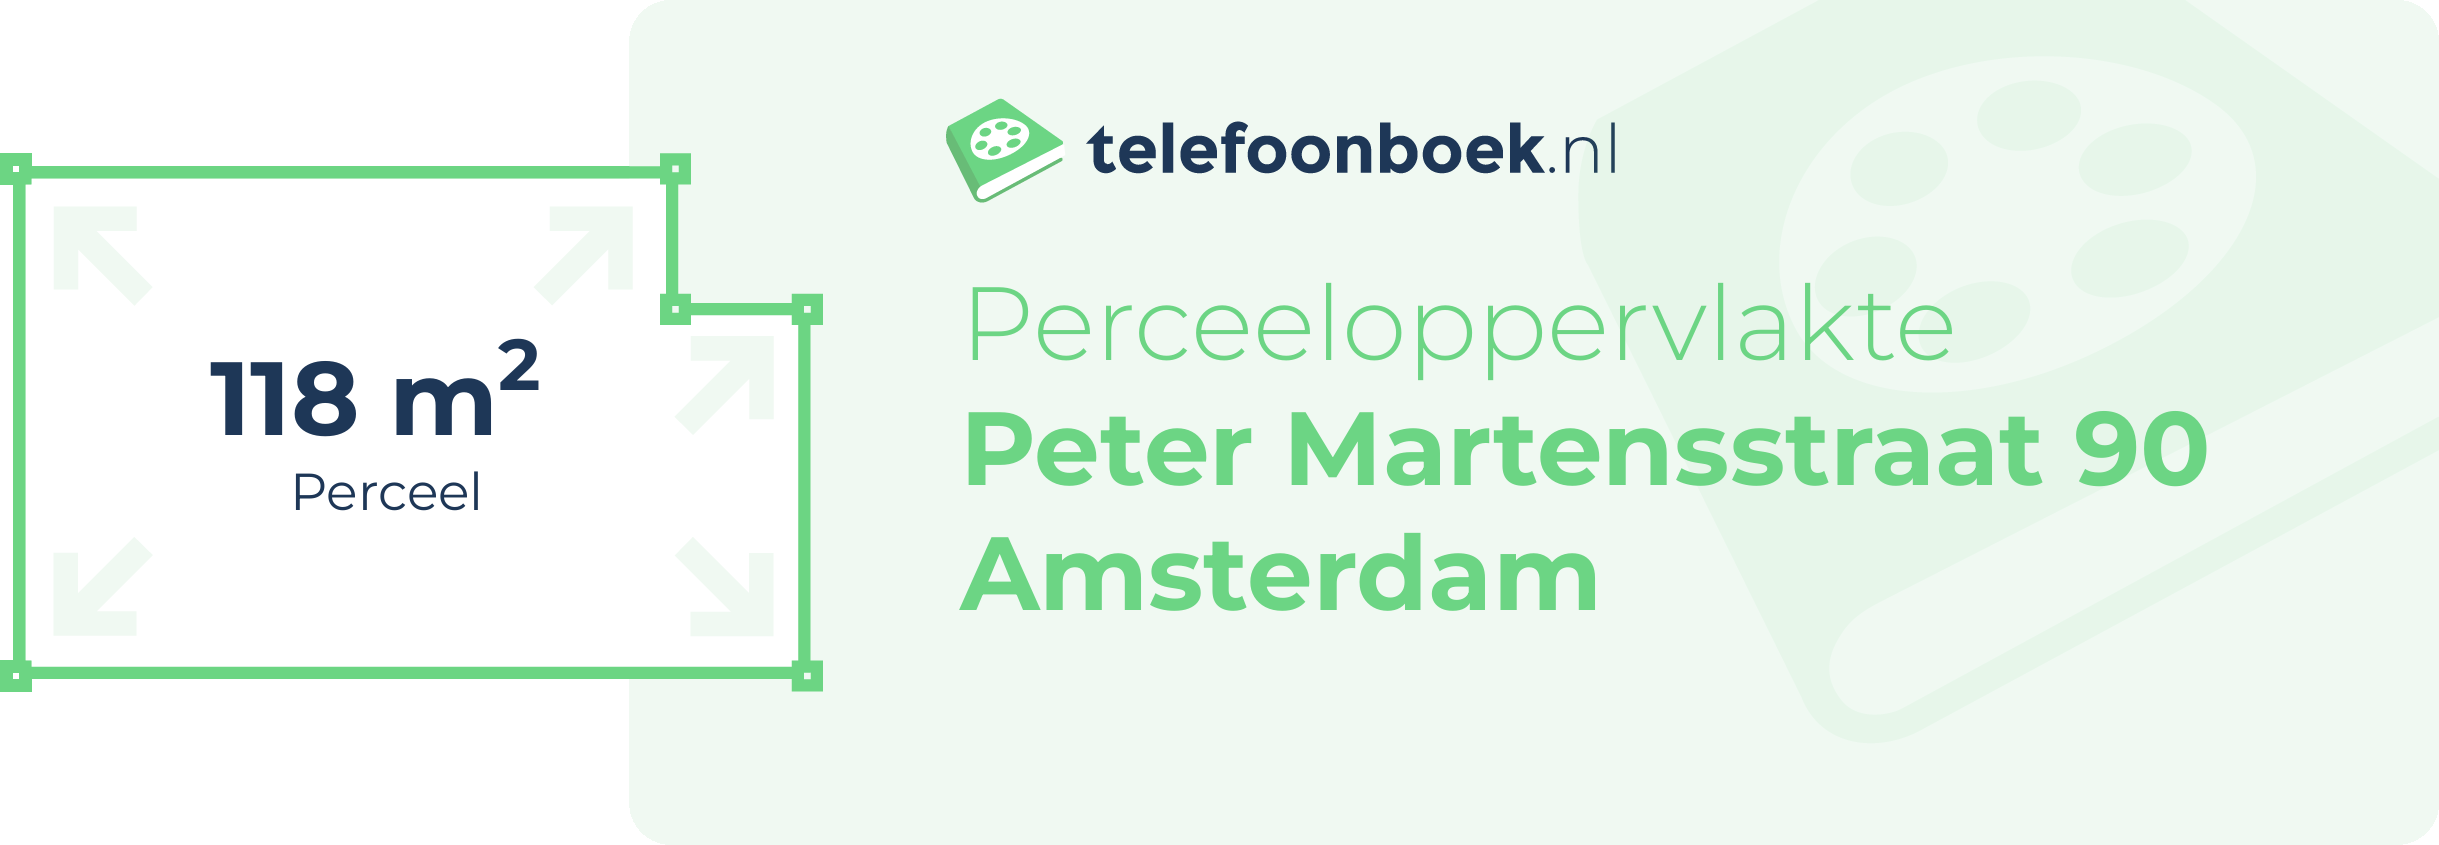 Perceeloppervlakte Peter Martensstraat 90 Amsterdam